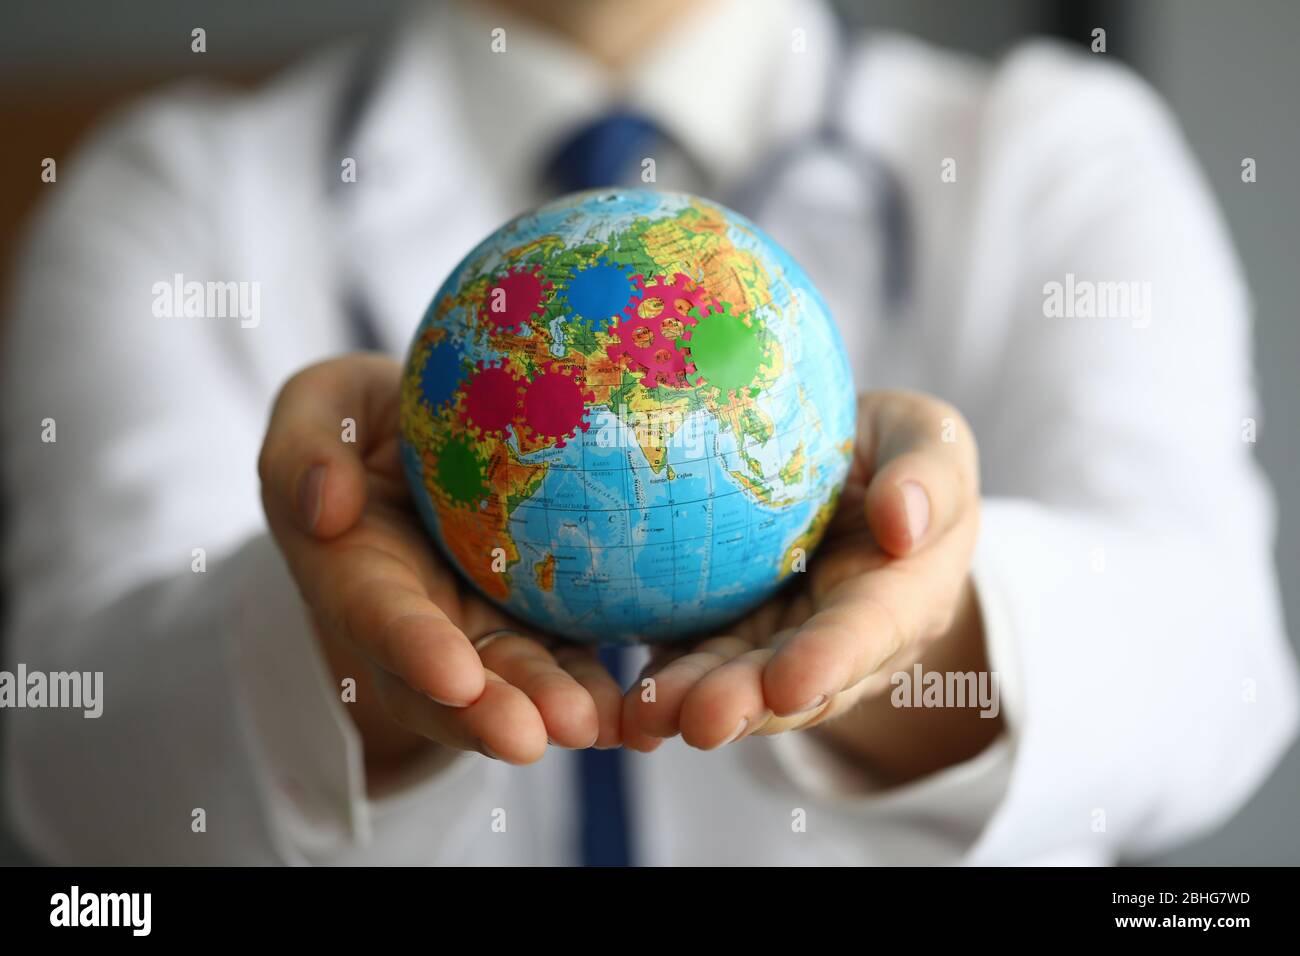 Doctor shows globe with coronavirus, world pandemic Stock Photo